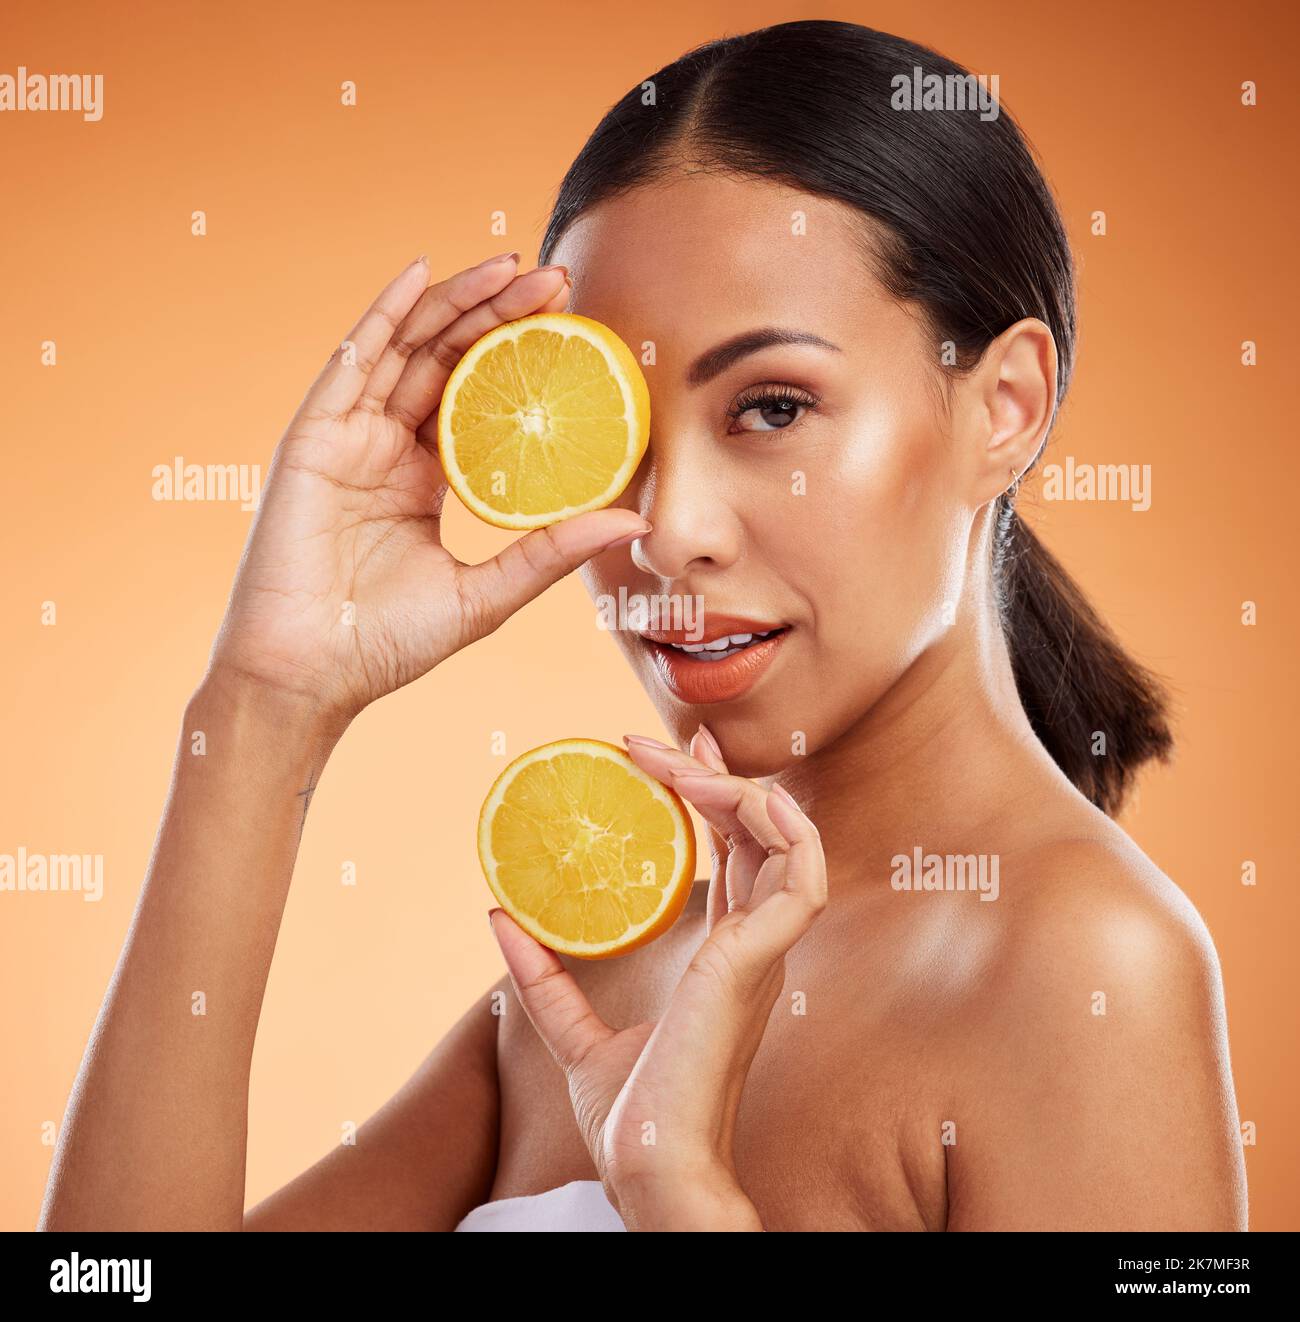 Hautpflege in der Natur, Schönheit und schwarze Frau mit Zitrone Vitamin C Gesichtsentgiftung für schöne, natürliche und gesunde Haut leuchten. Obst, Wellness und Stockfoto